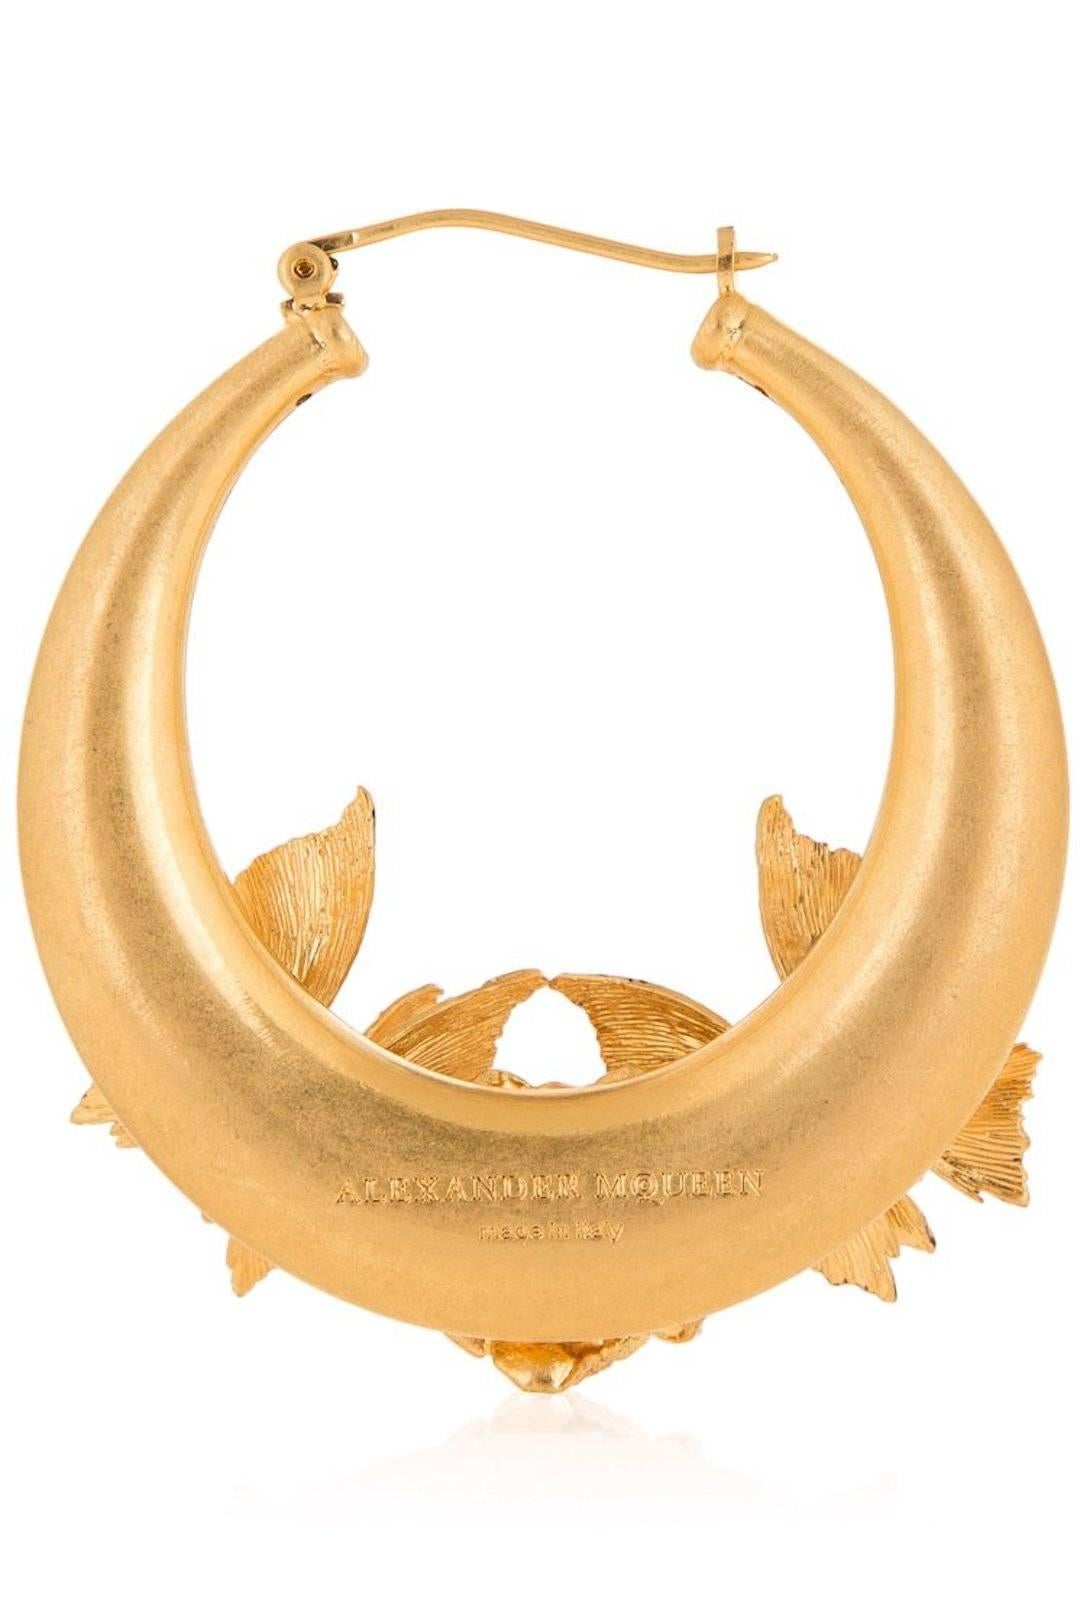 Alexander McQueen NEW Gold Swarovski Crystal Hoop Earrings in Box 1